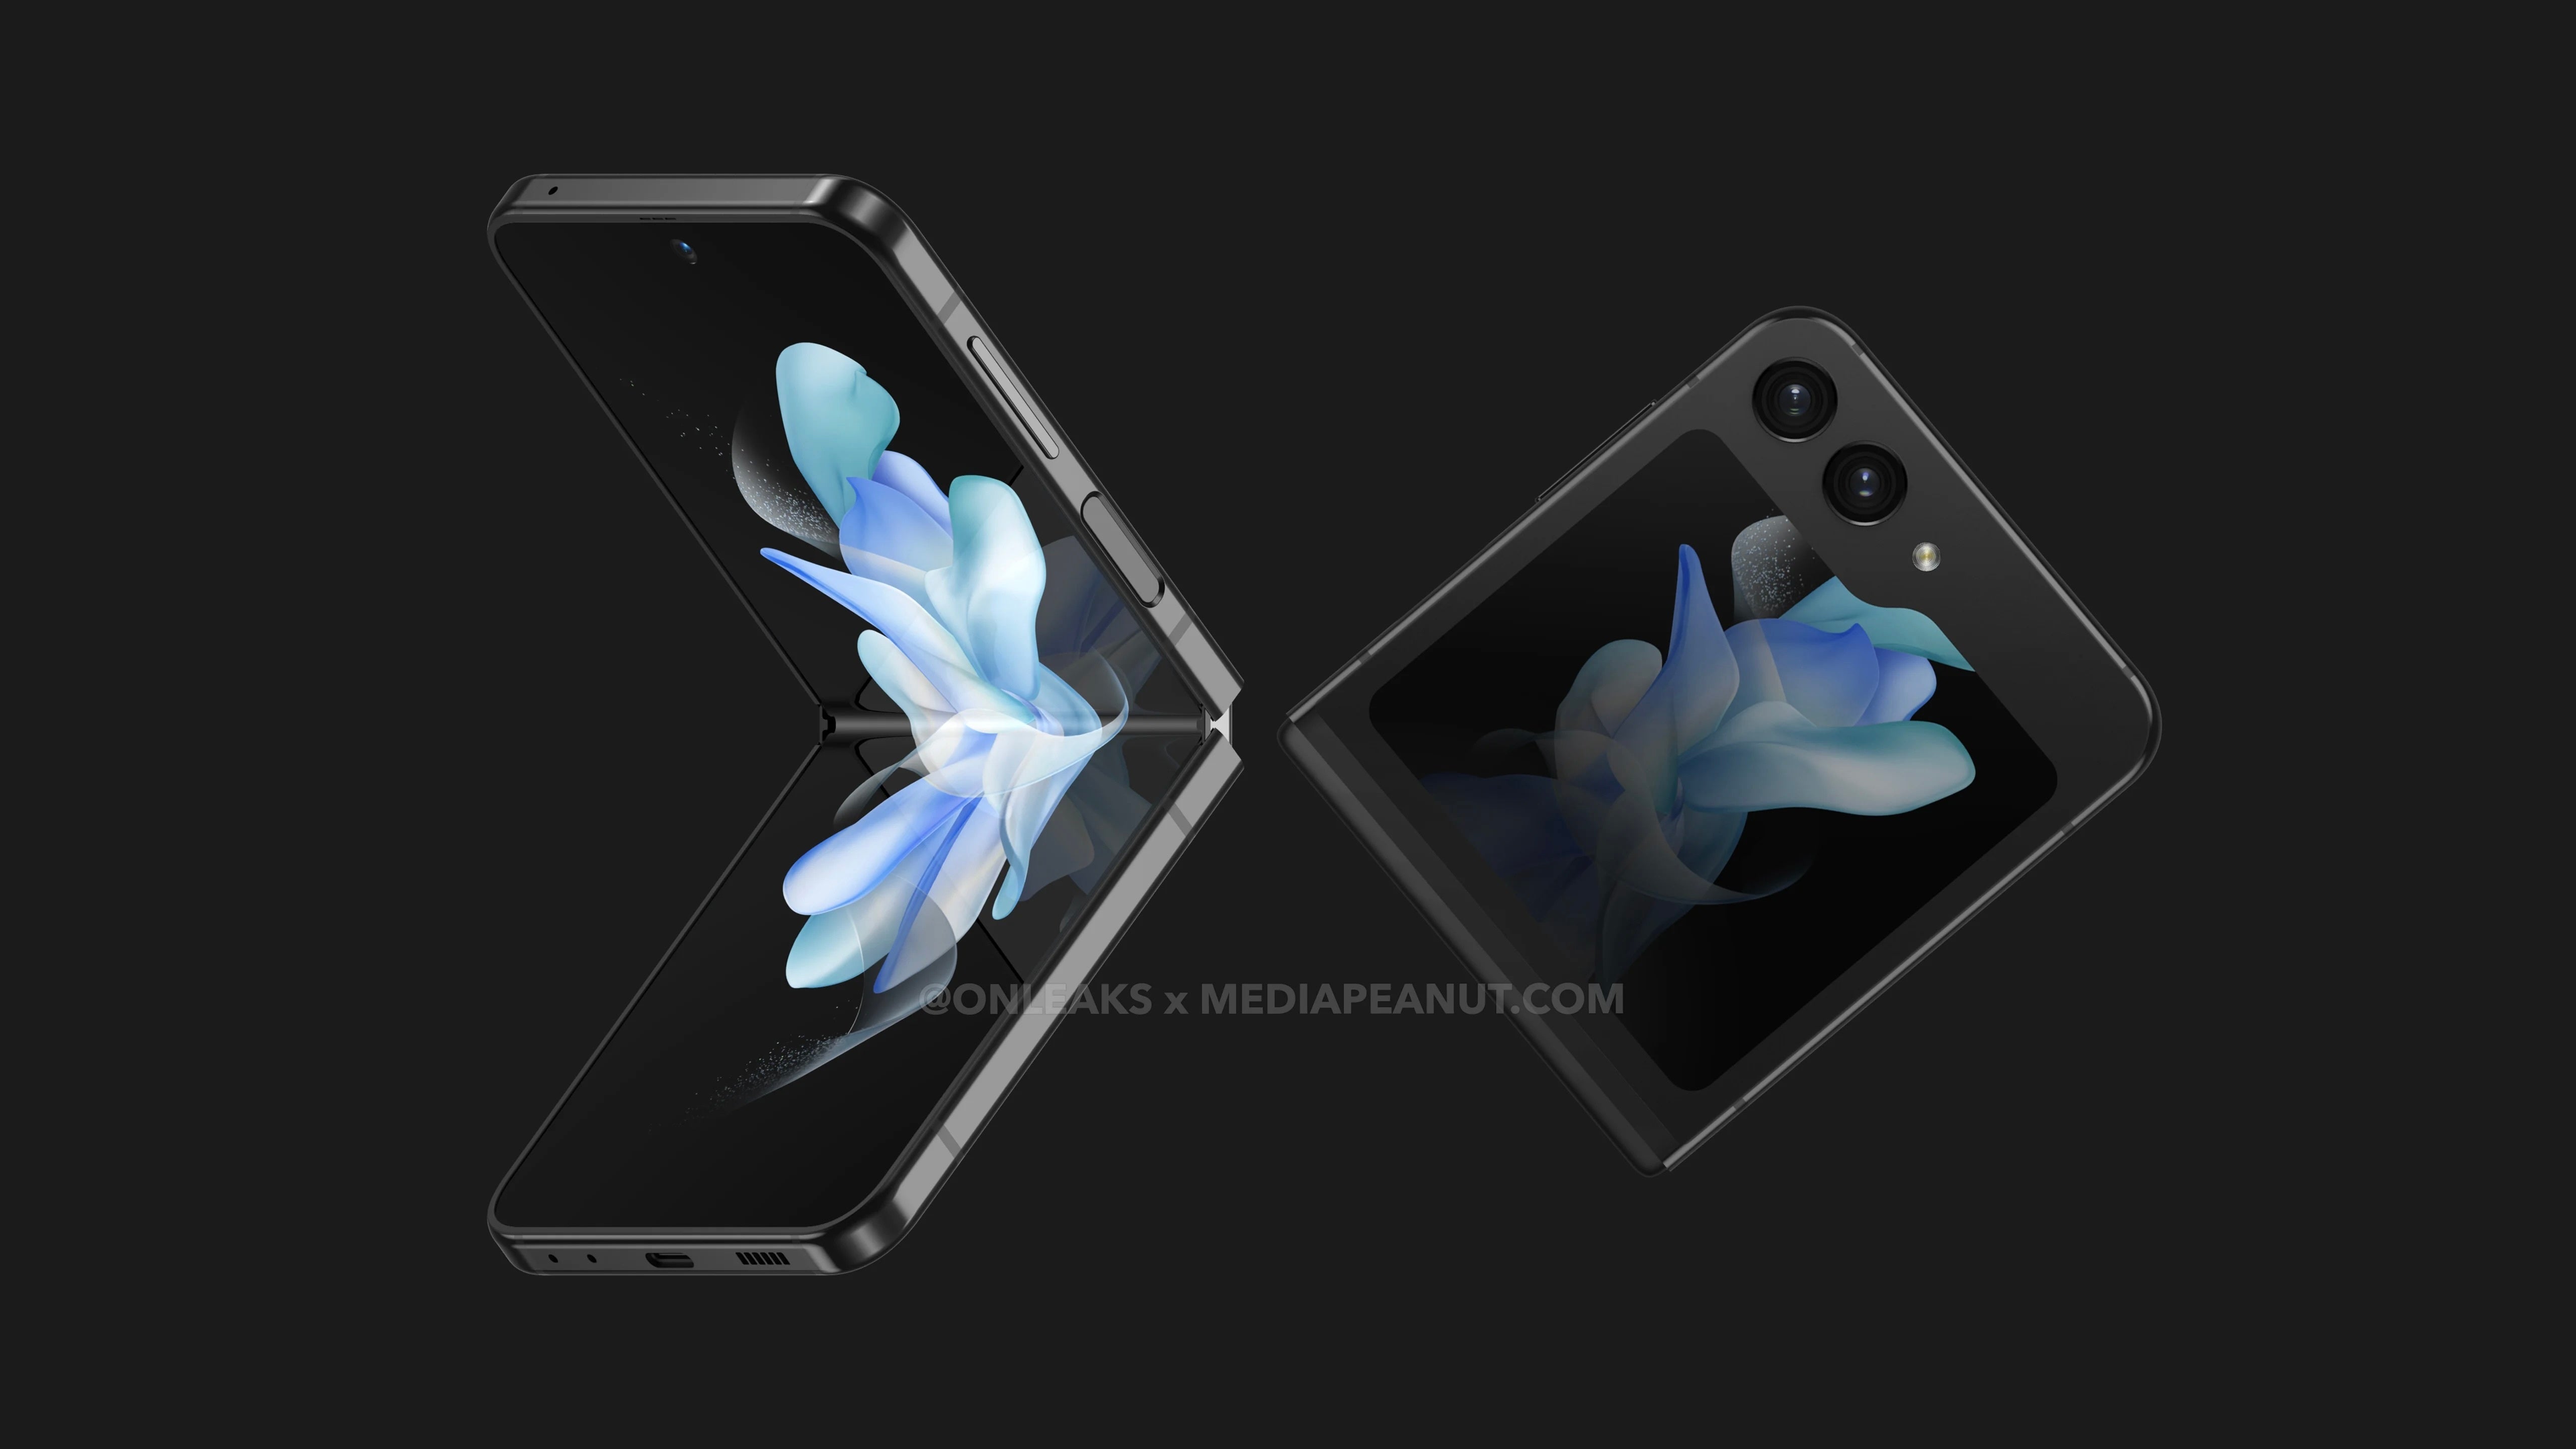 Crédit d'image - @OnLeaks &  @MediaPeanut.com - Refonte de l'écran de couverture du Galaxy Z Flip 5 confirmée par l'étui officiel de Samsung